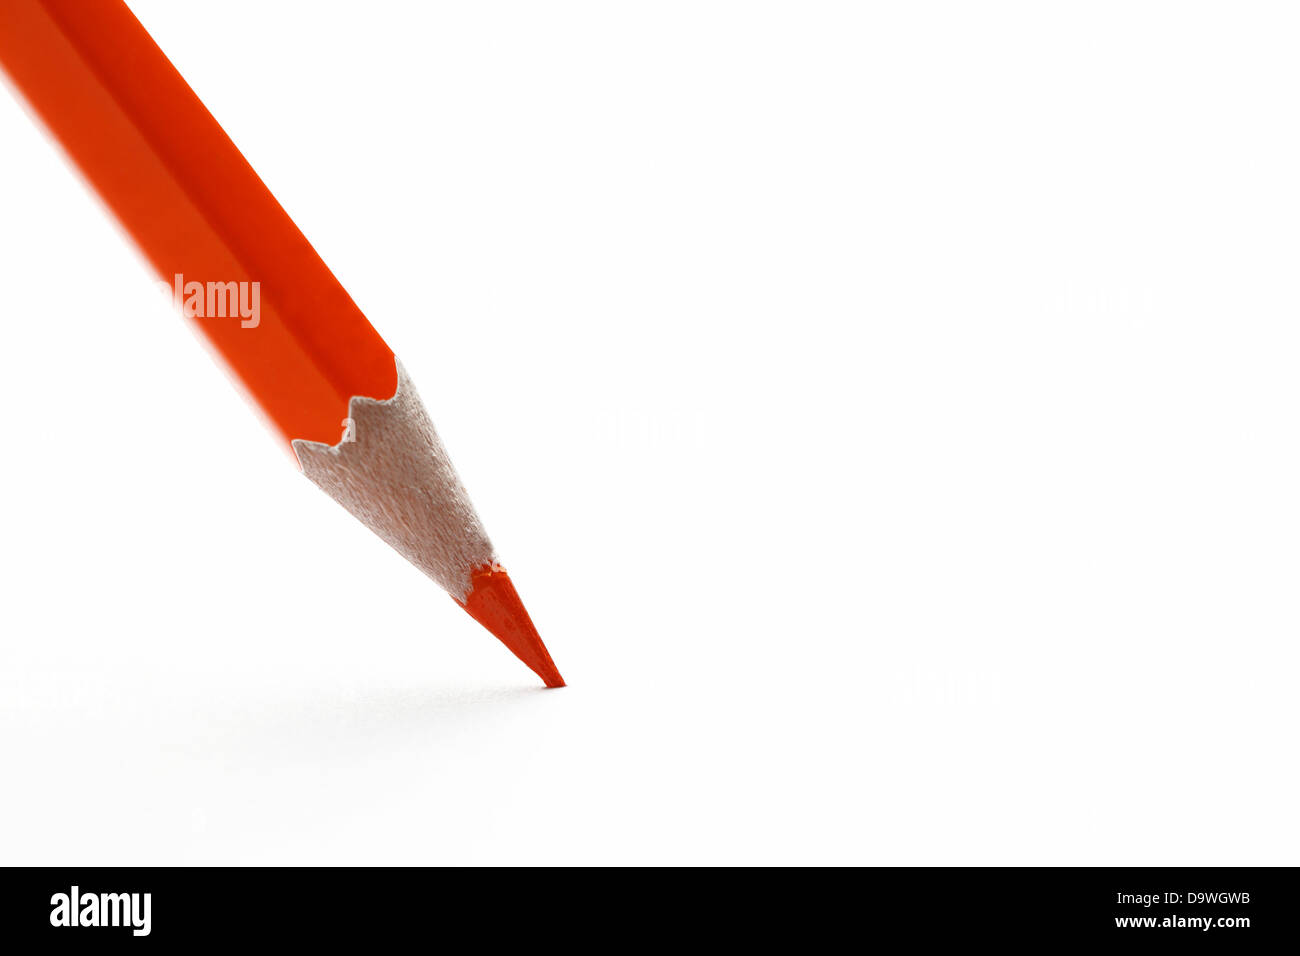 Pencil tip close-up Stock Photo